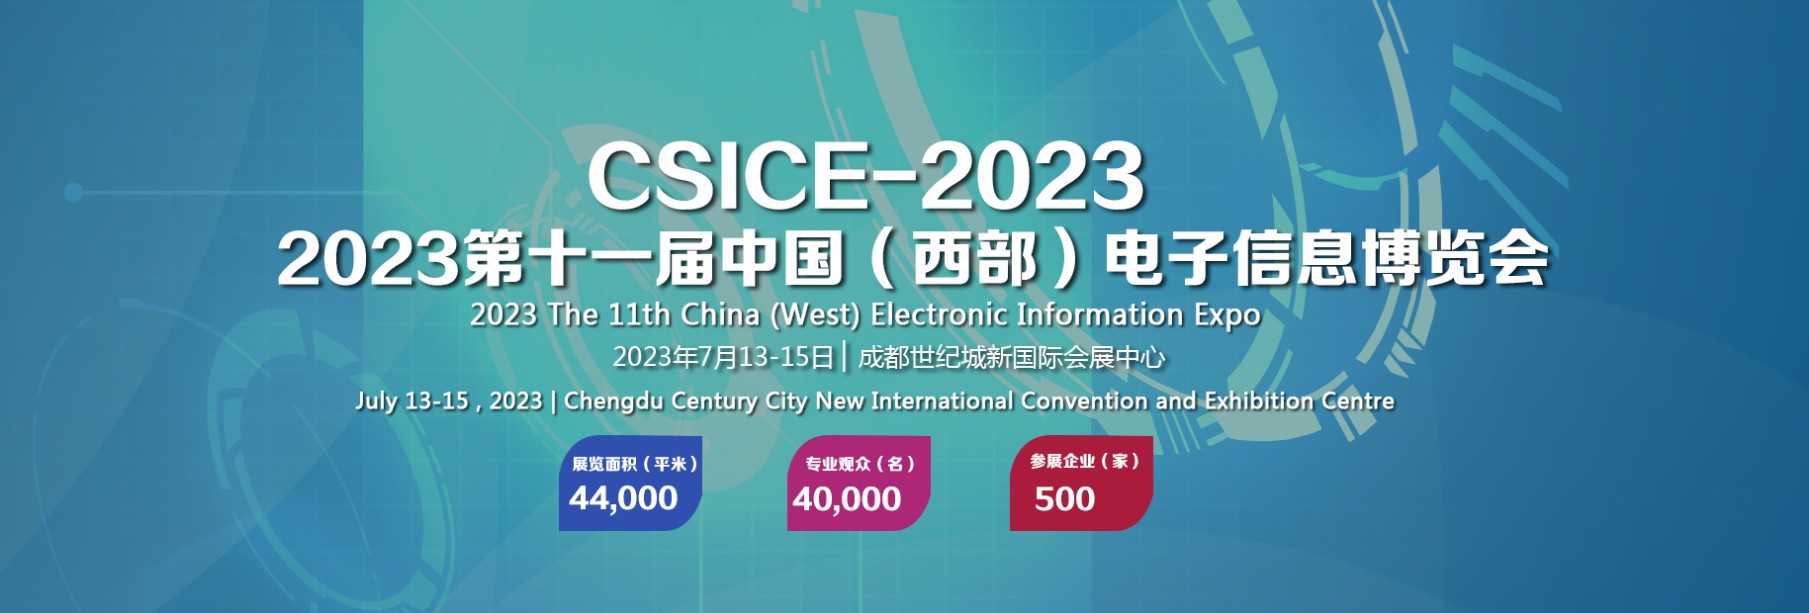 2023第十一届中国(西部)电子信息博览会